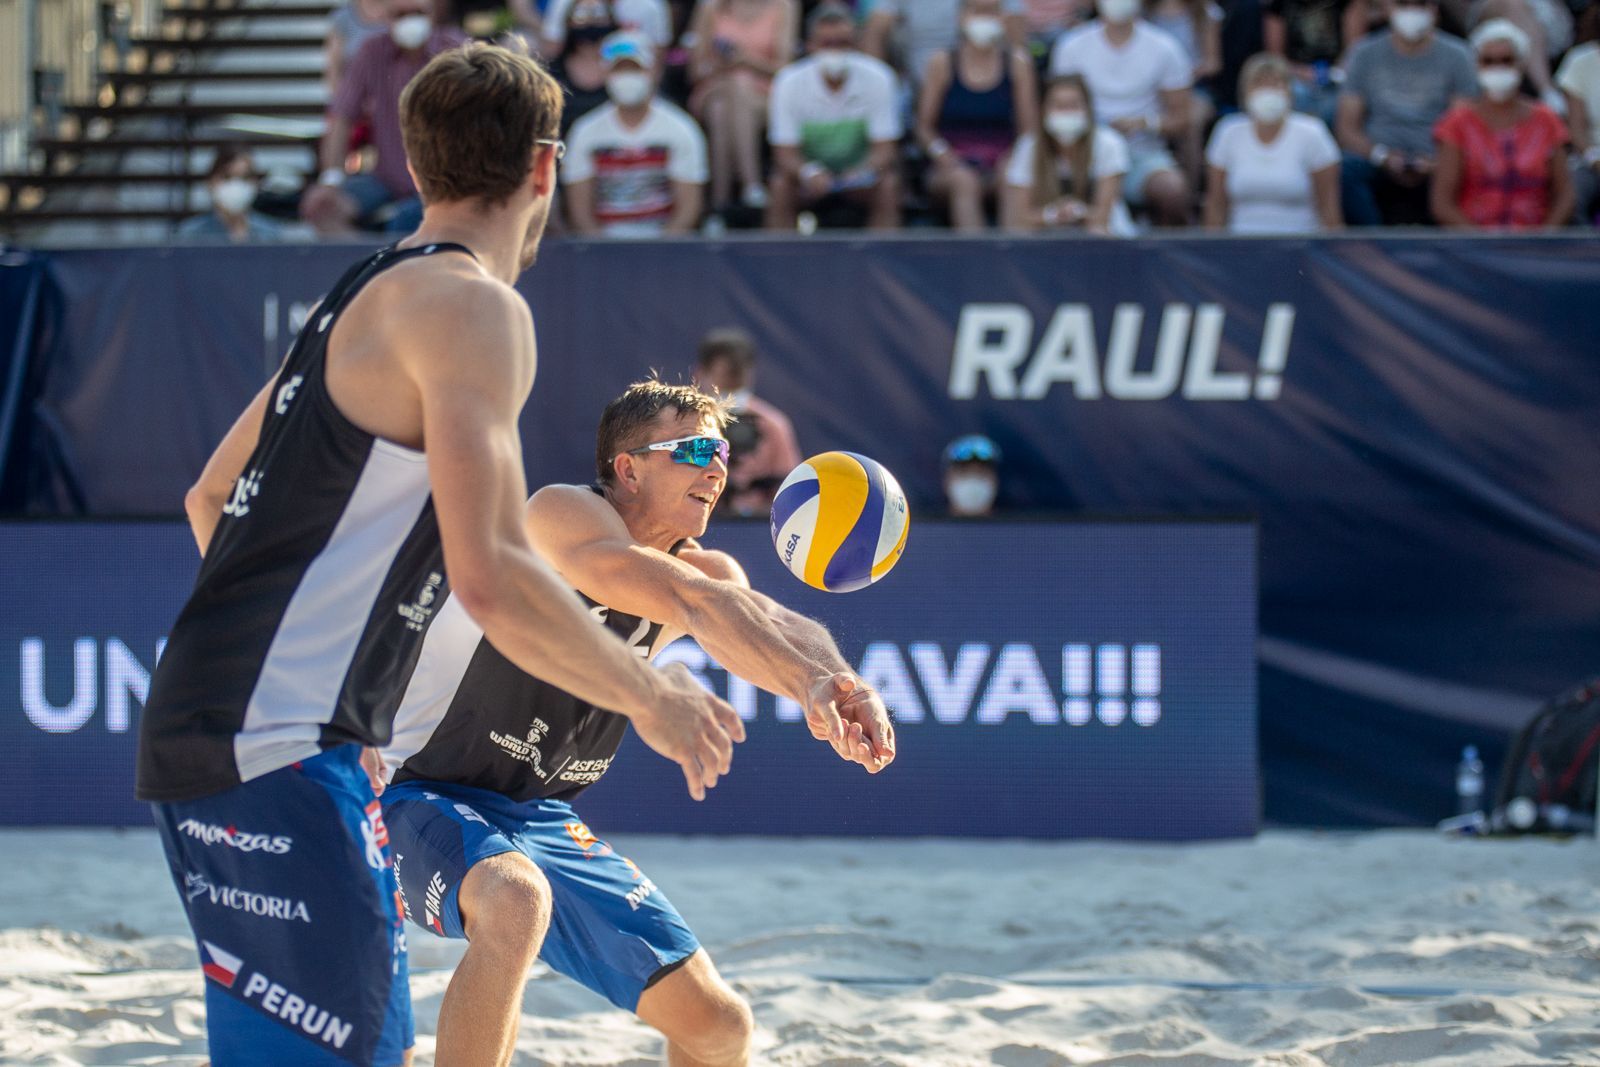 Finále turnaje v  plážovém volejbale v Ostravě 2021